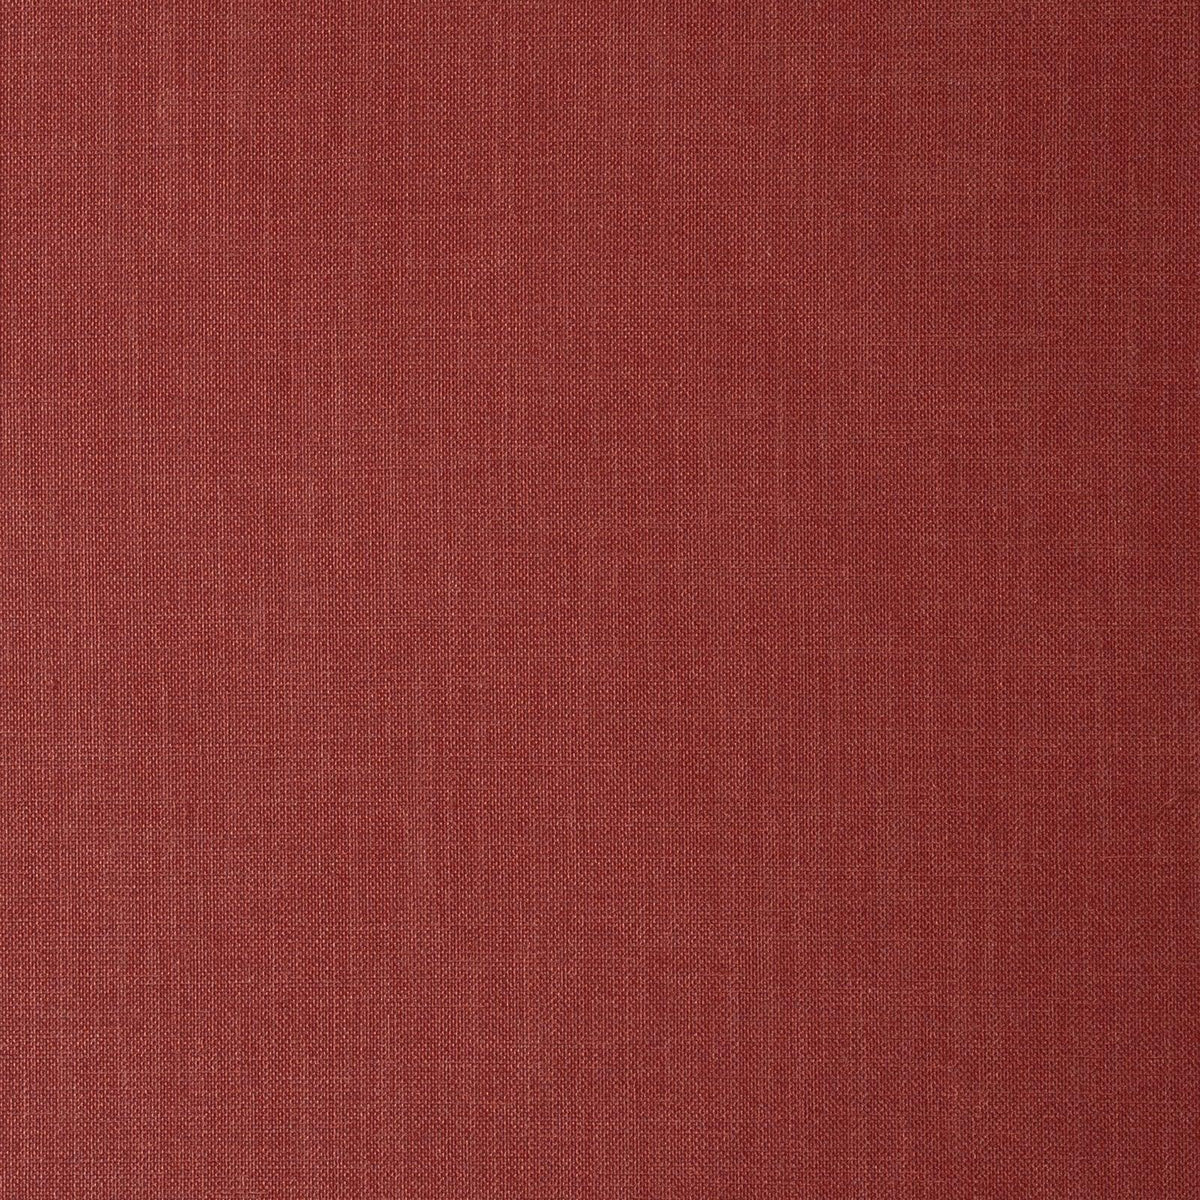 Vibrato-Canyon - Atlanta Fabrics